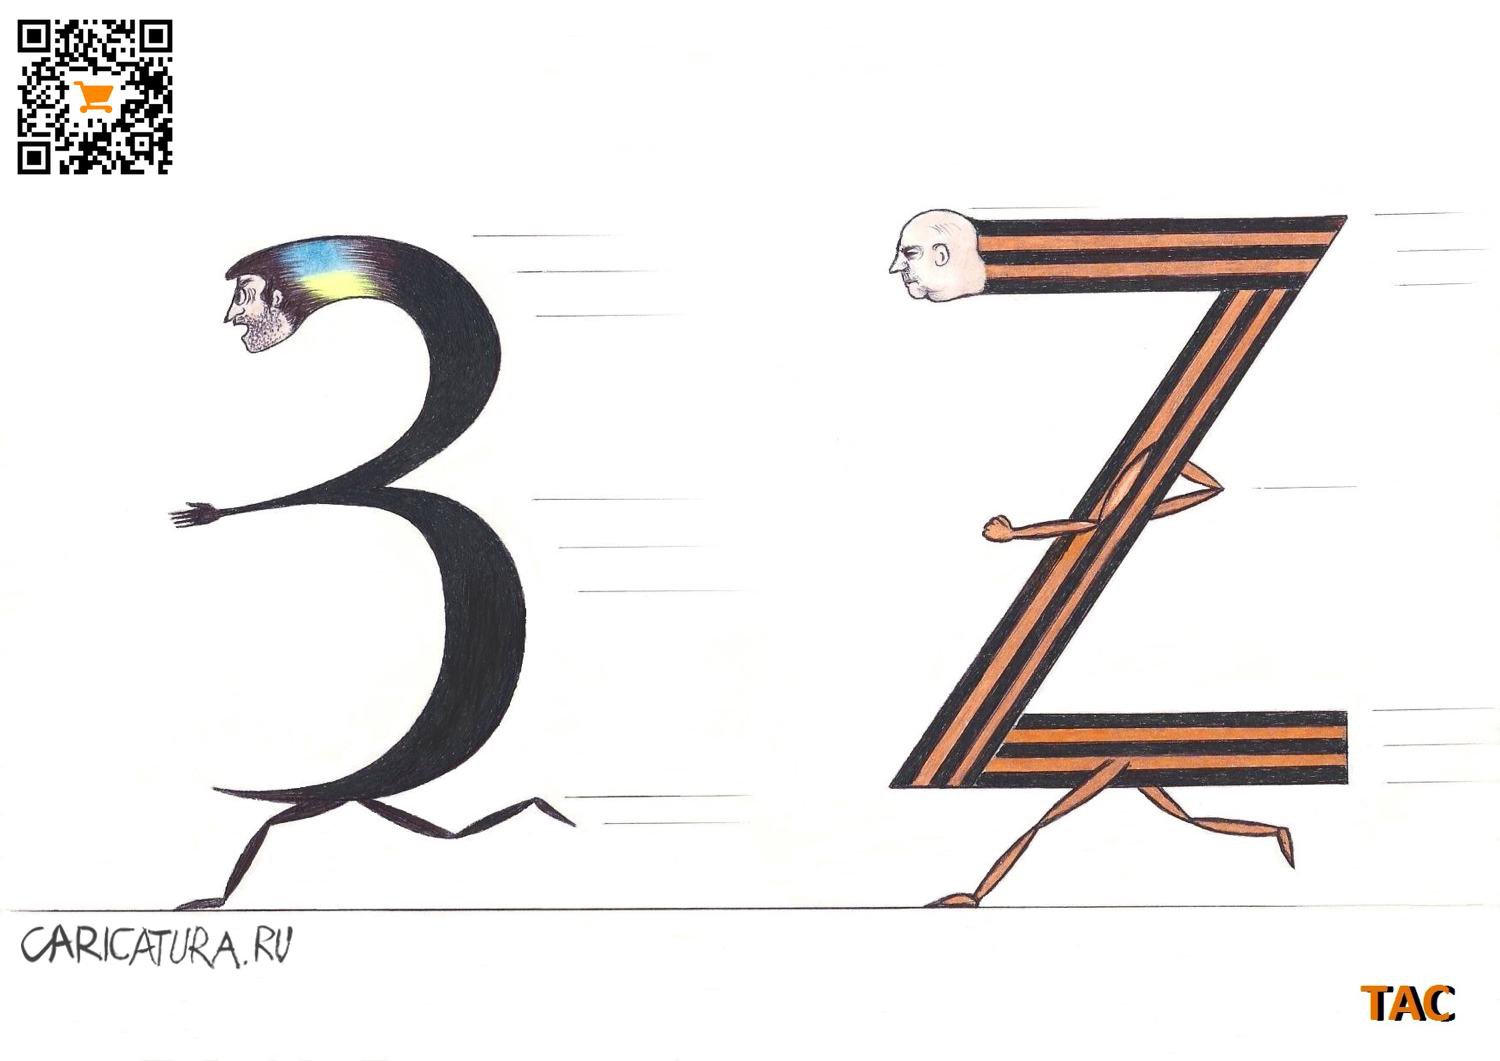   Z,  